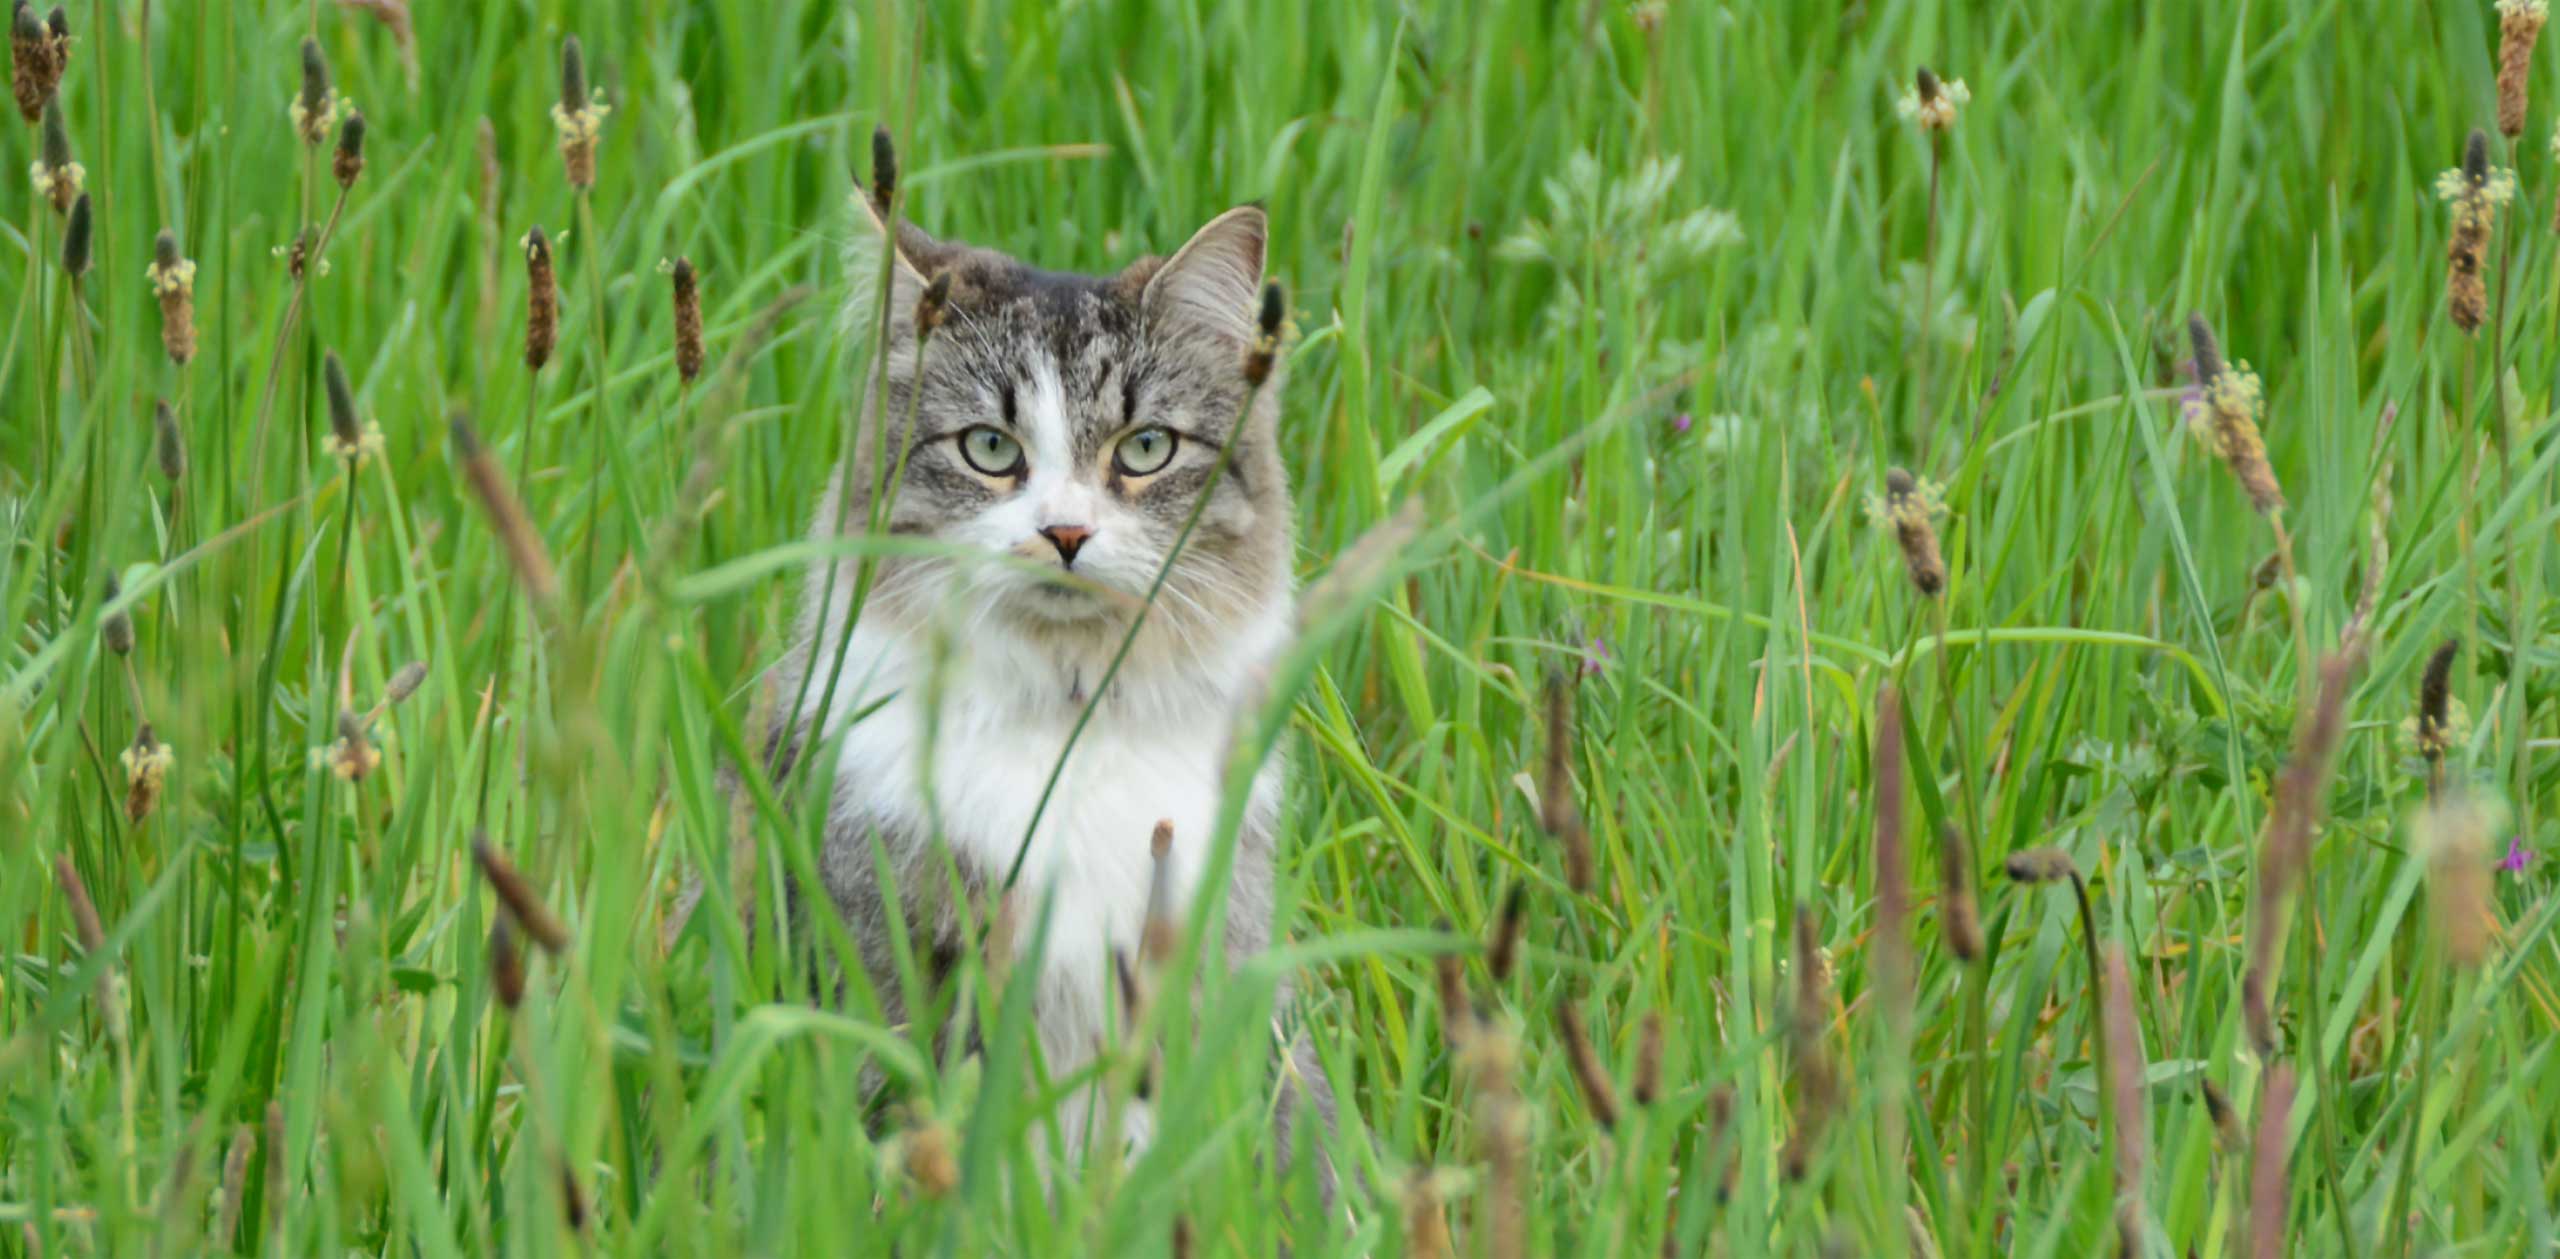 Kat verstopt in hoog gras verwijst naar natuurlijke hulpbronnen die worden gebruikt voor Go Natural kattenbakvulling op houtbasis